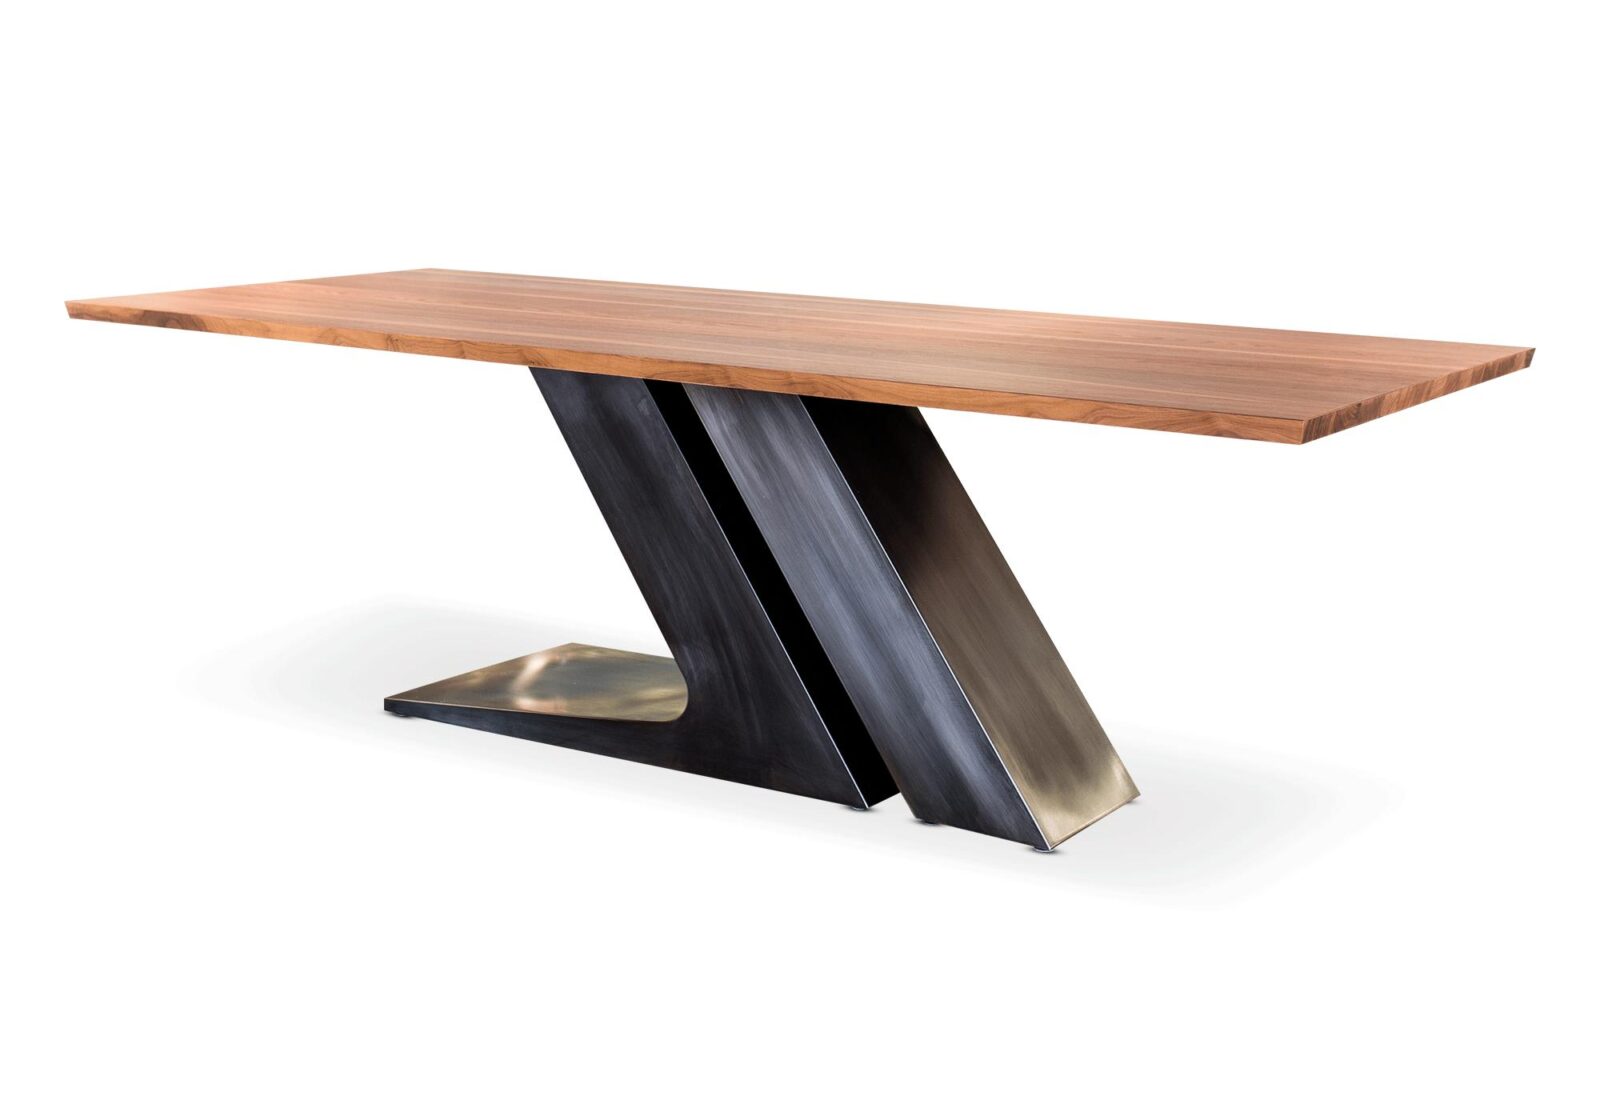 Escot Tisch. Moderner Esstisch aus Nussbaum. Nussbaum massiv. Erhältlich bei Möbel Gallati.